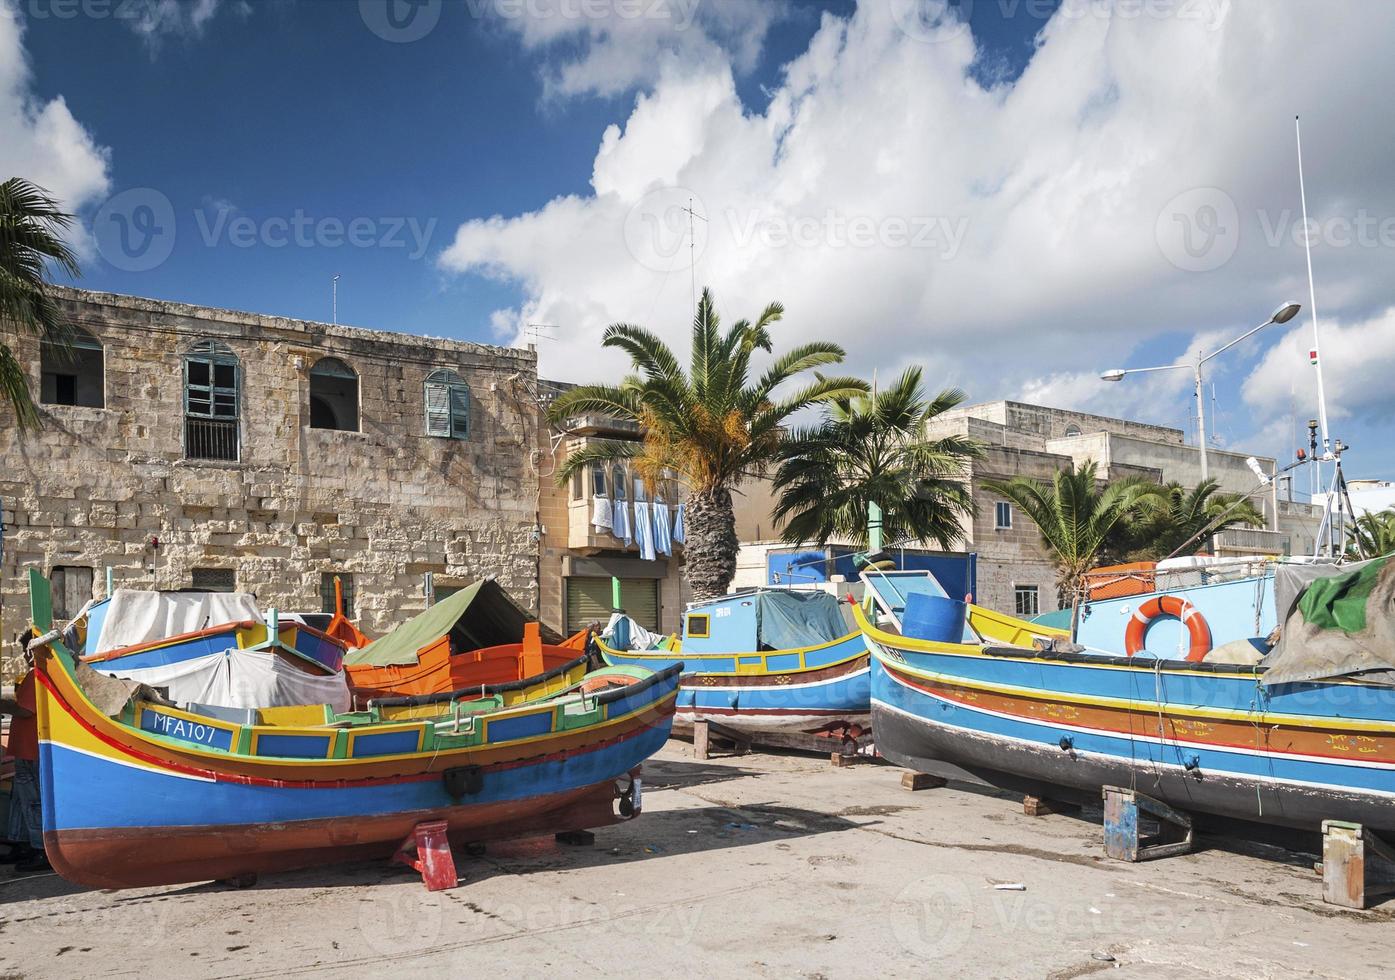 Barcos luzzu pintados tradicionales malteses en marsaxlokk pueblo pesquero de malta foto